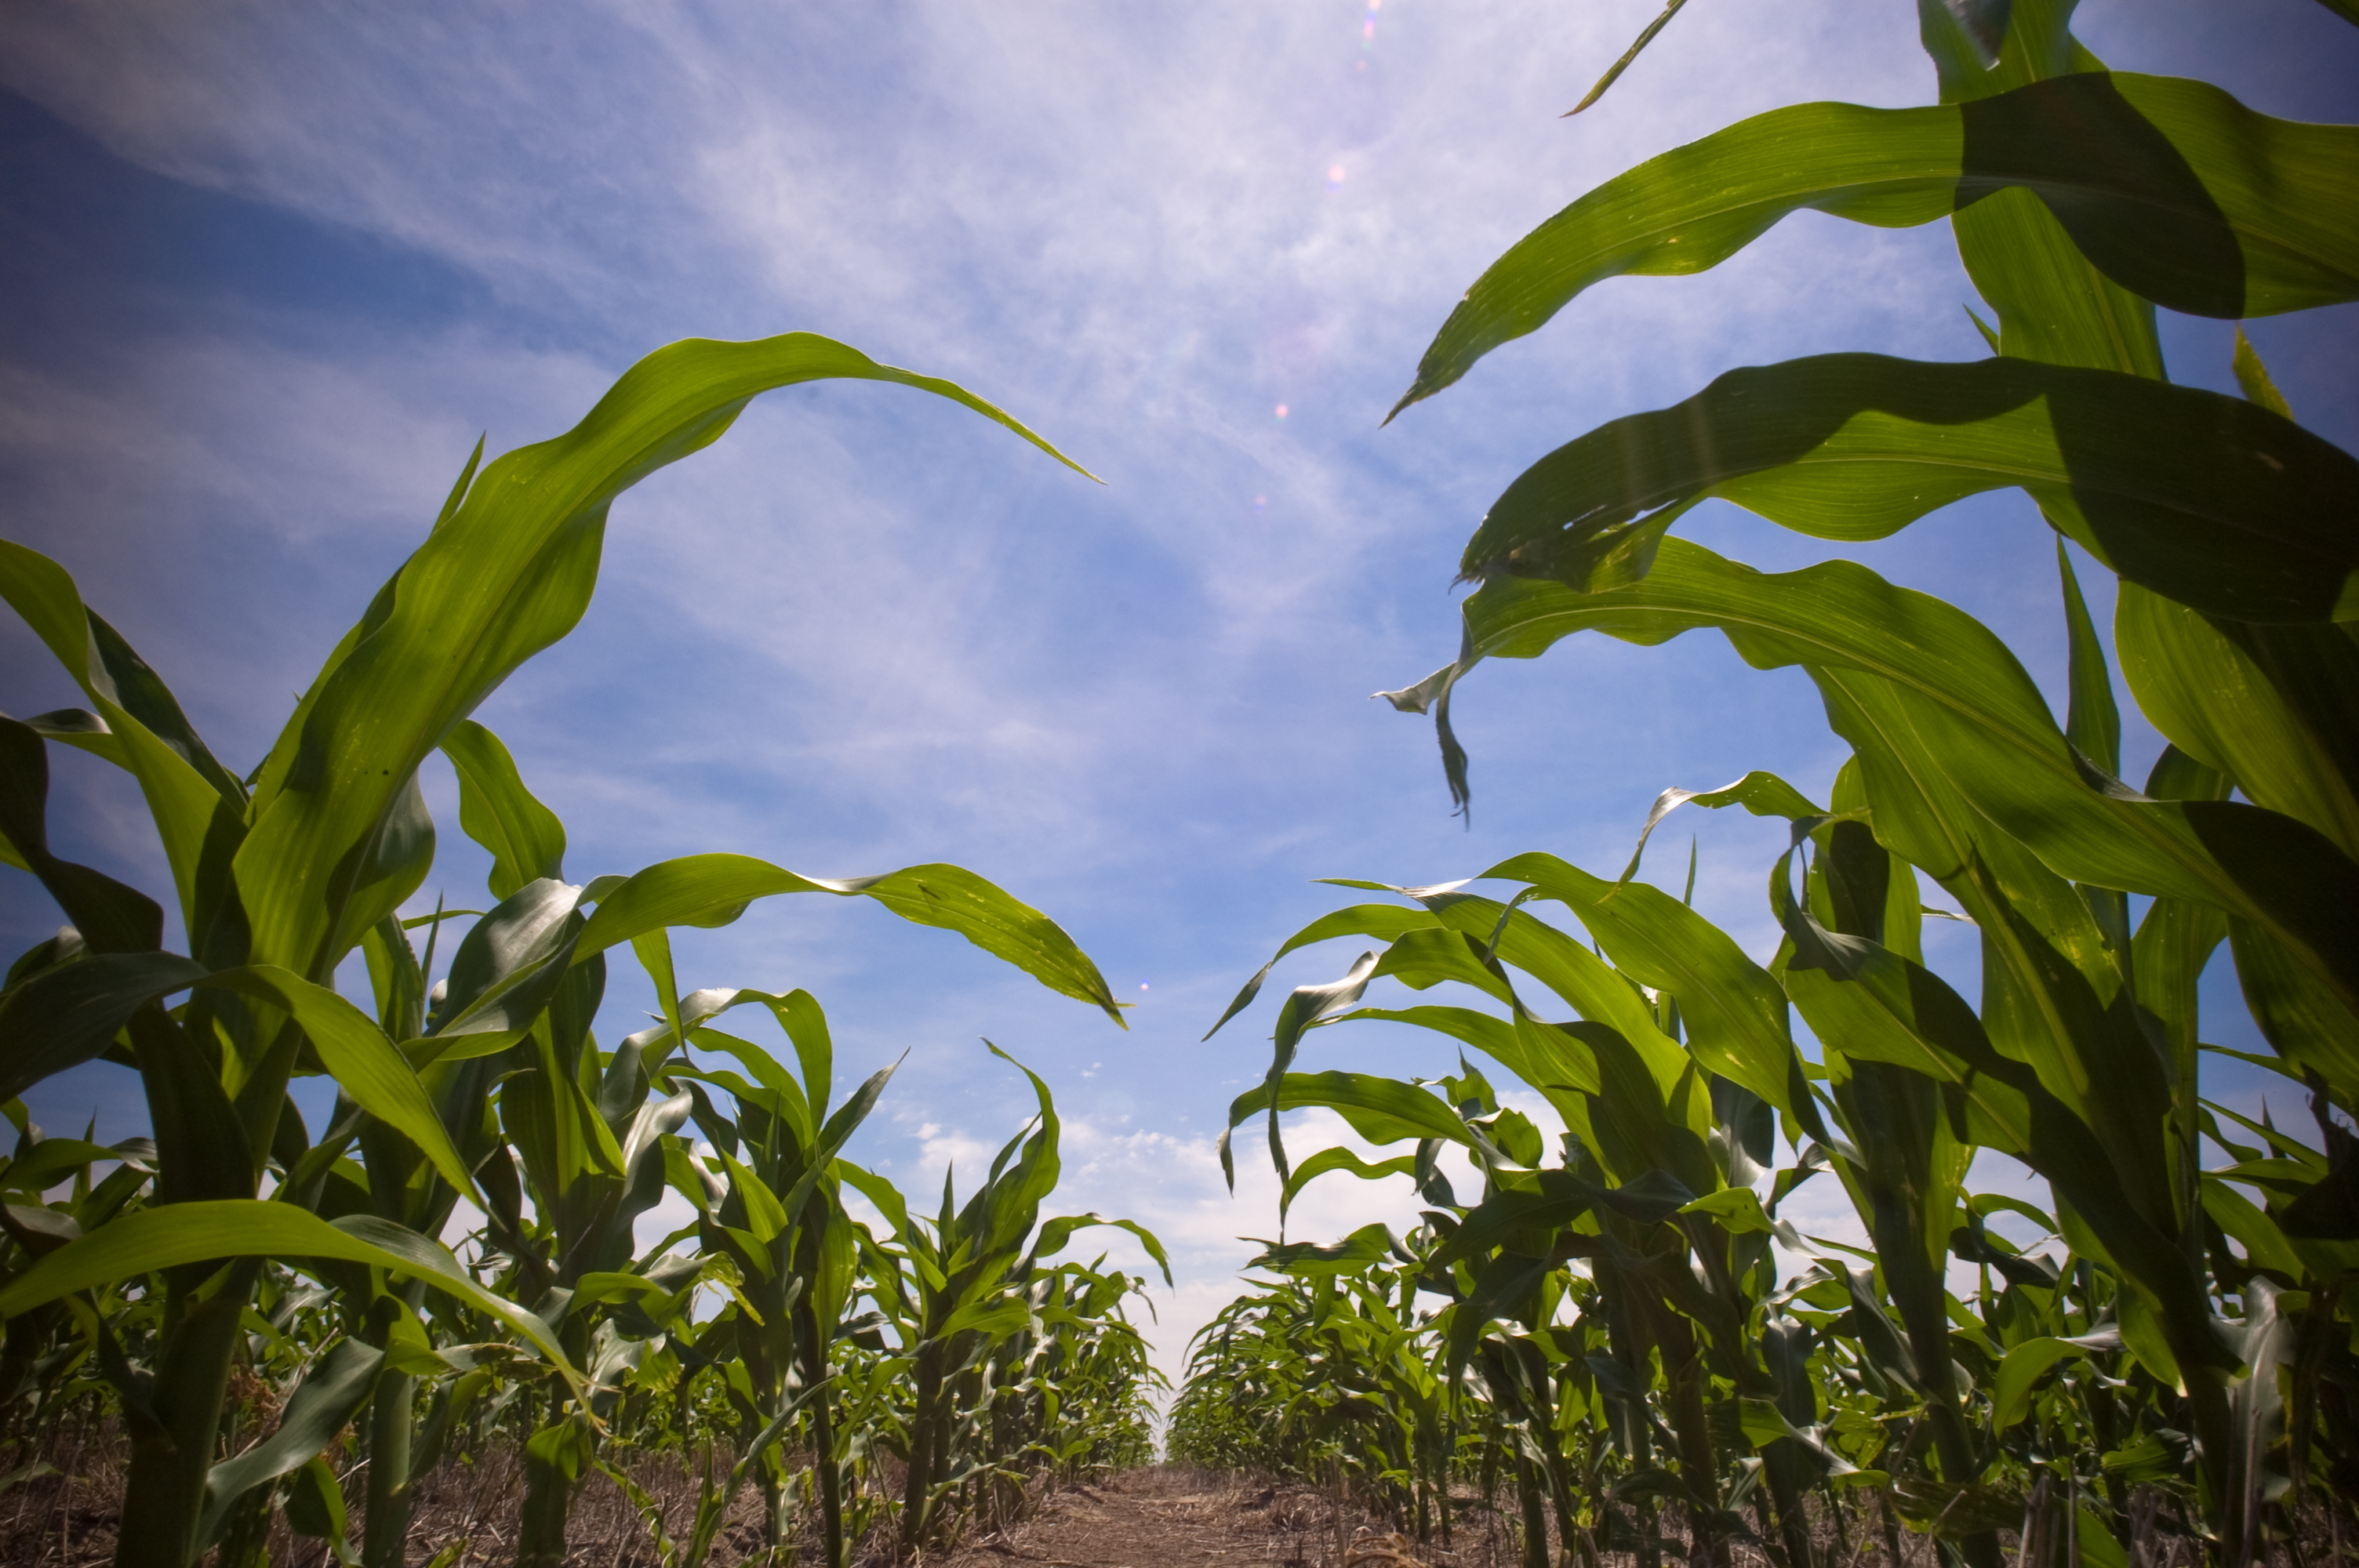 File:In the corn field.jpg - Wikimedia Commons